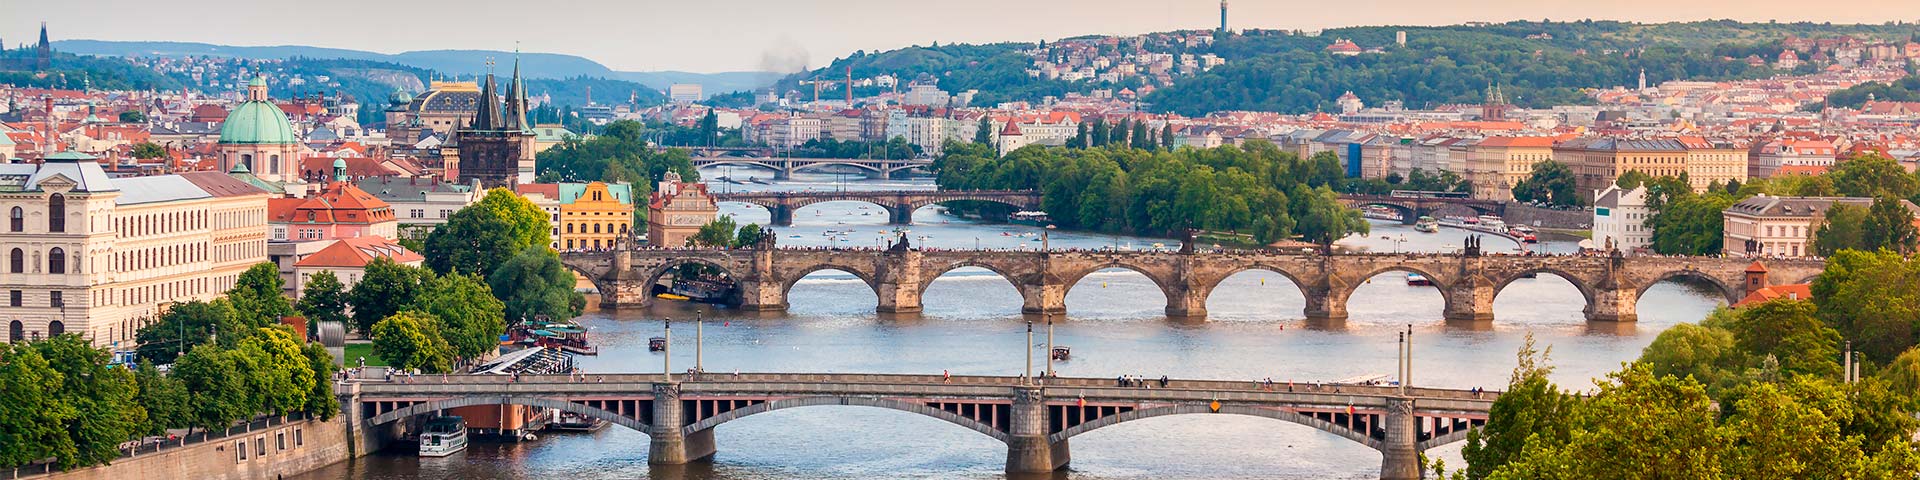 Übersetzung Tschechisch: Panorama von Prag mit Aussicht auf den Brücken über die Moldau, Tschechien.